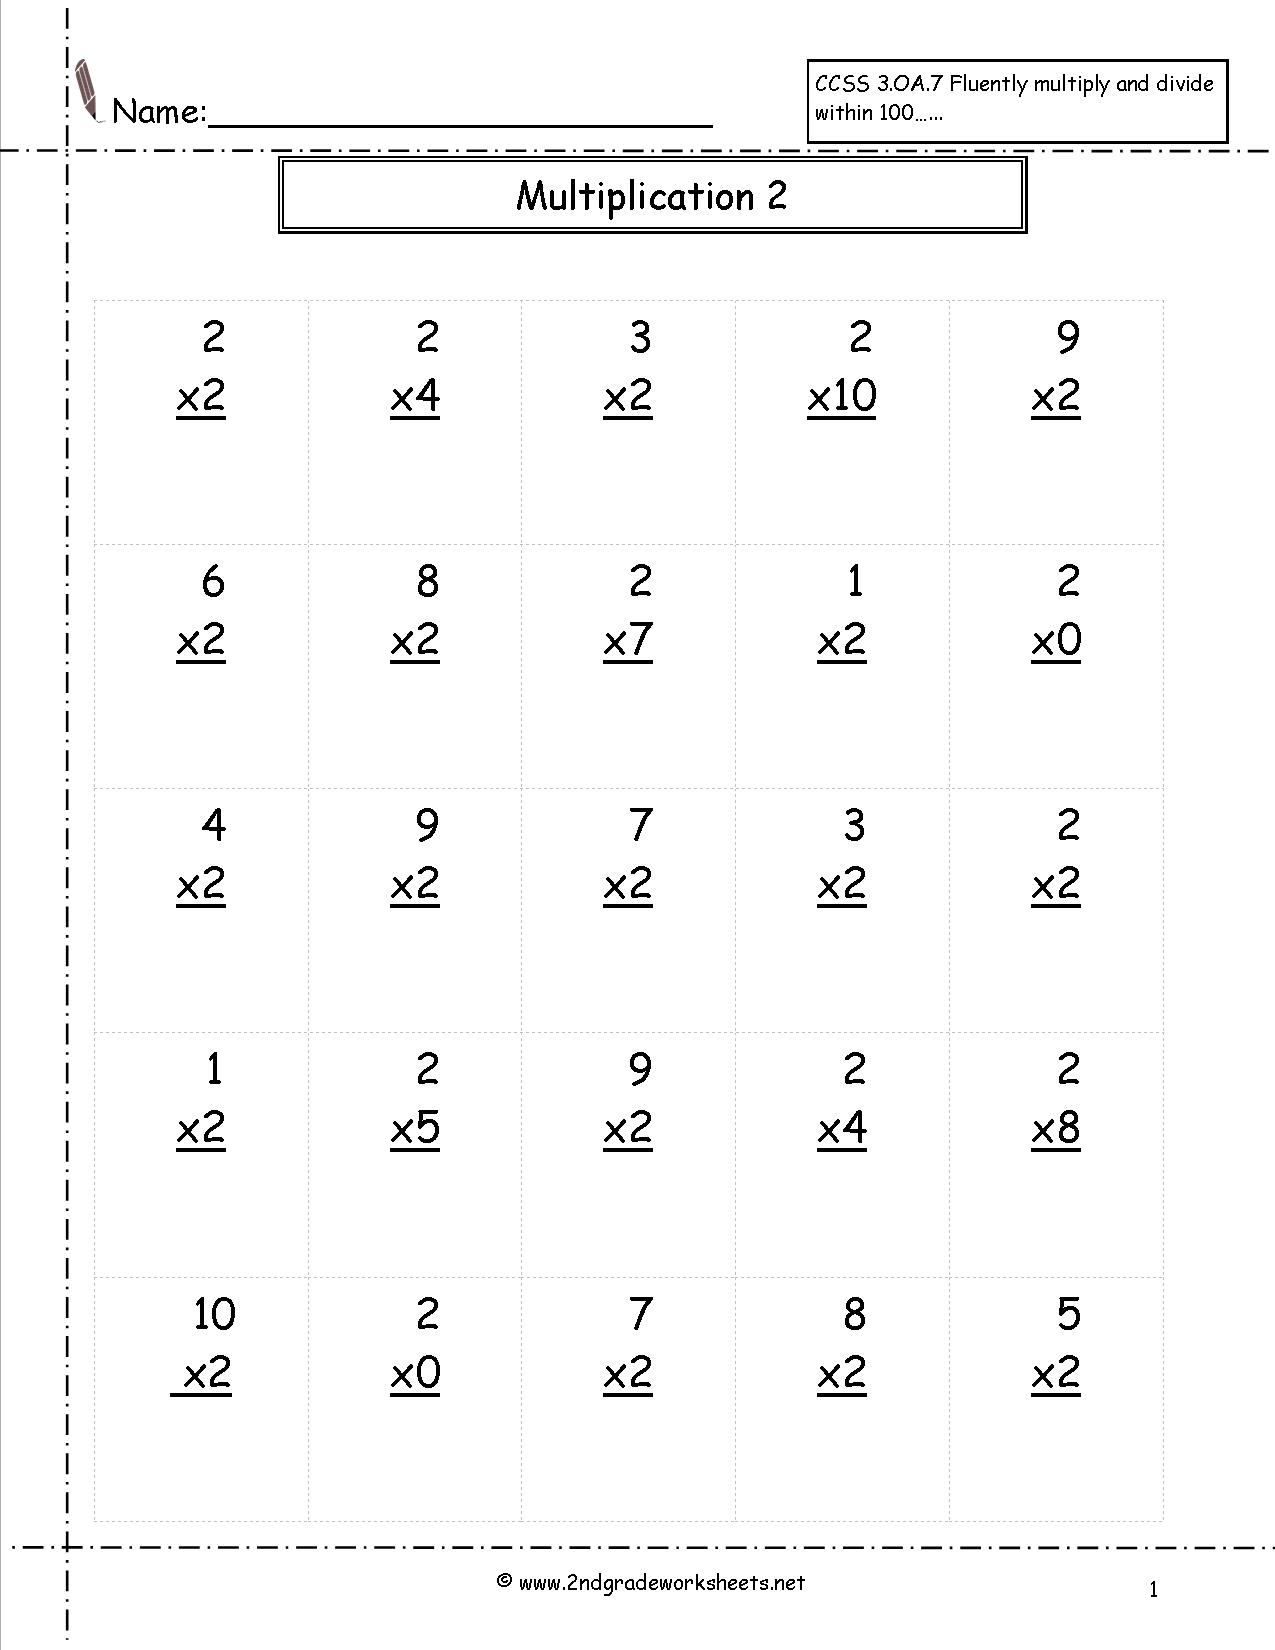 Multiplication Worksheet 0 6 | Printable Worksheets And intended for Multiplication Worksheets X2 X5 X10